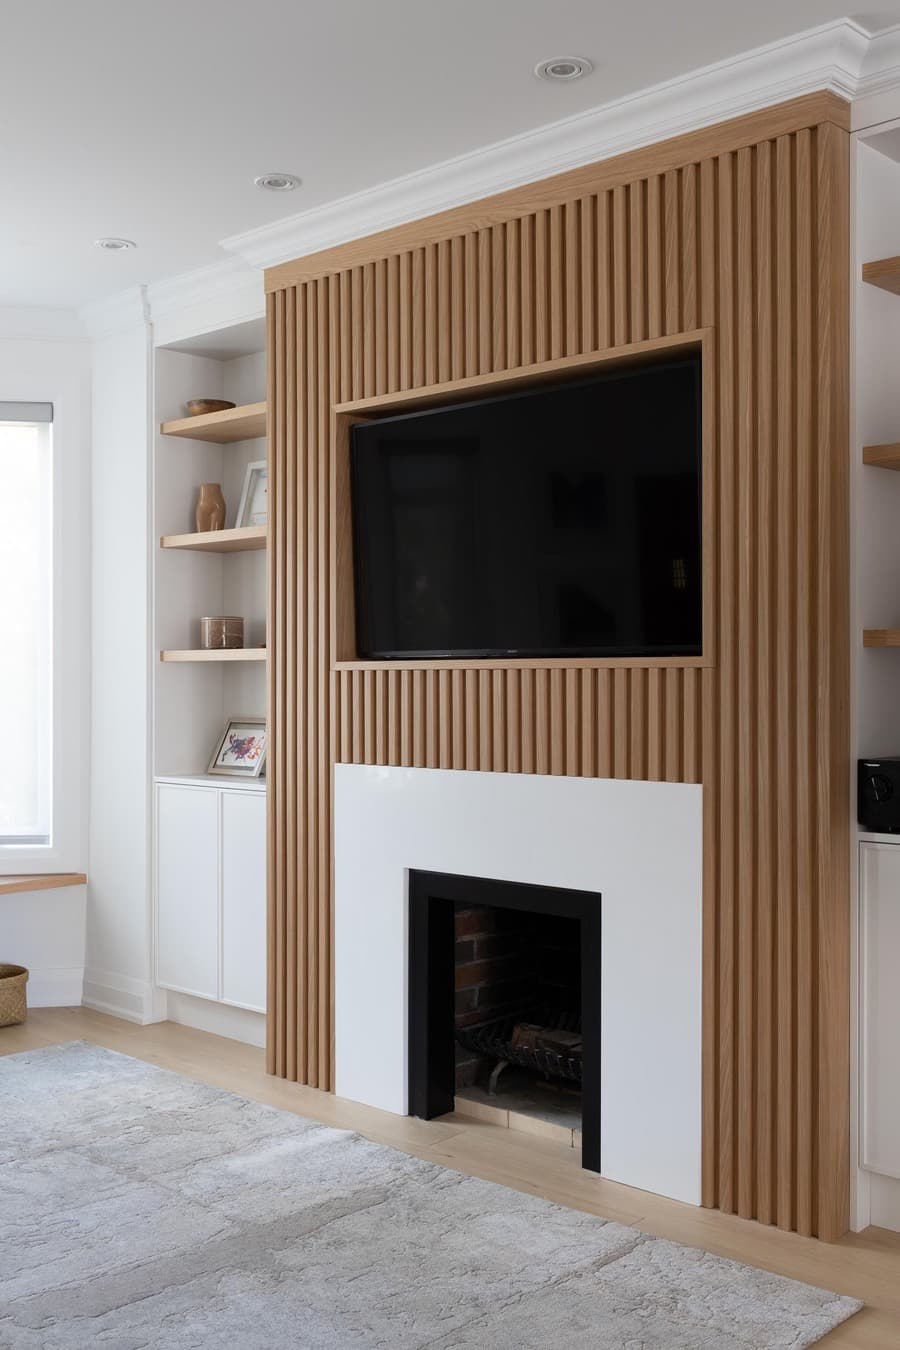 Living con una pared con un revestimiento de madera con un televisor y una chimenea debajo, y estantes de madera a los costados.